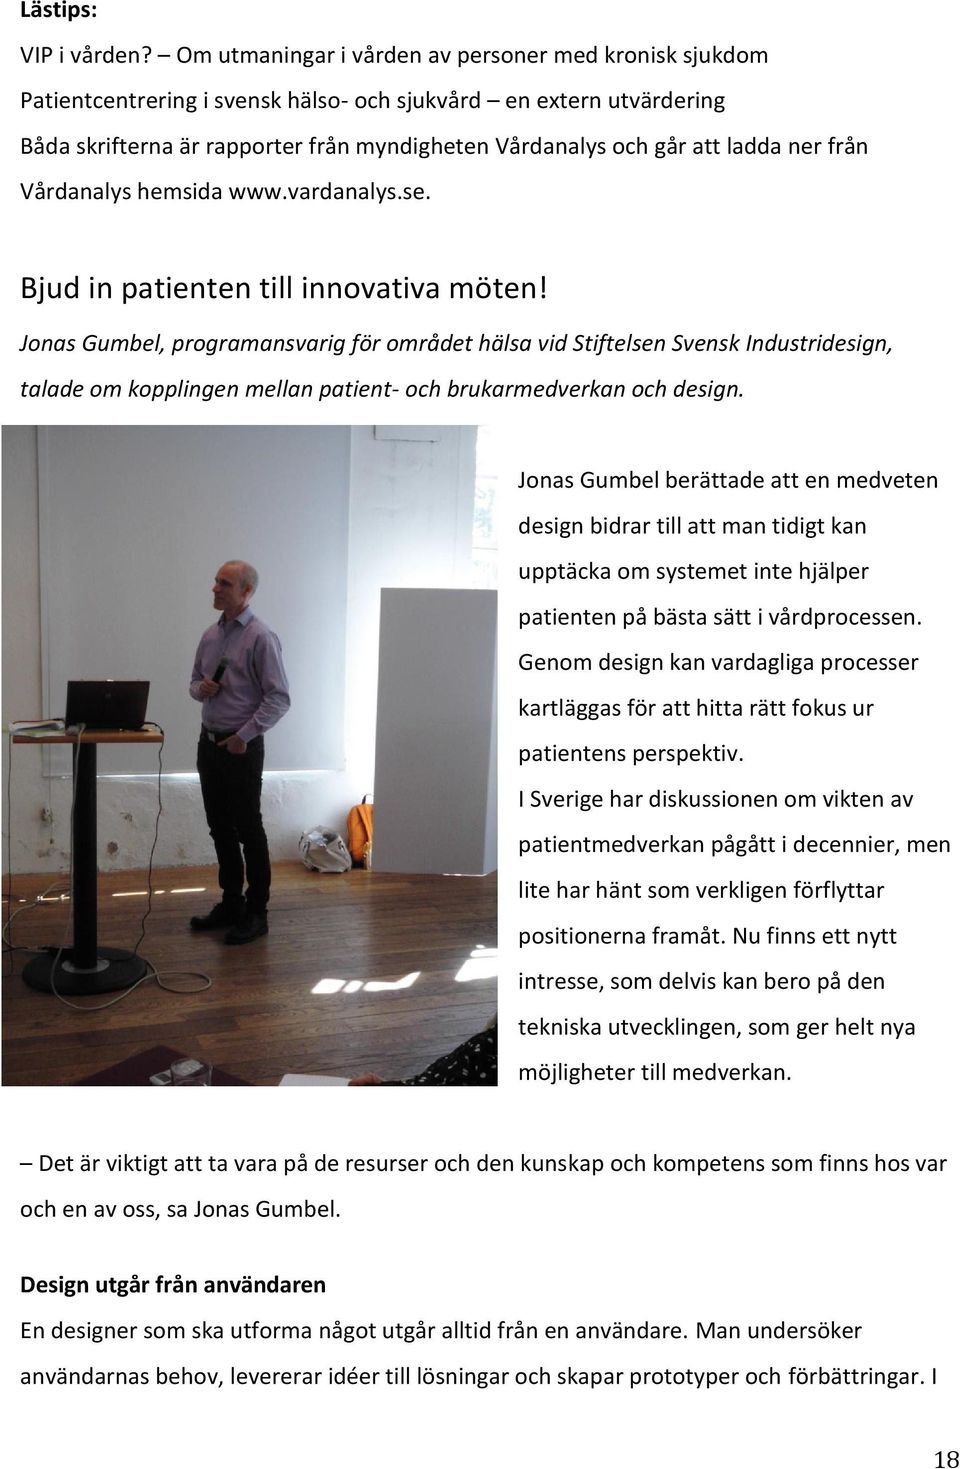 ner från Vårdanalys hemsida www.vardanalys.se. Bjud in patienten till innovativa möten!